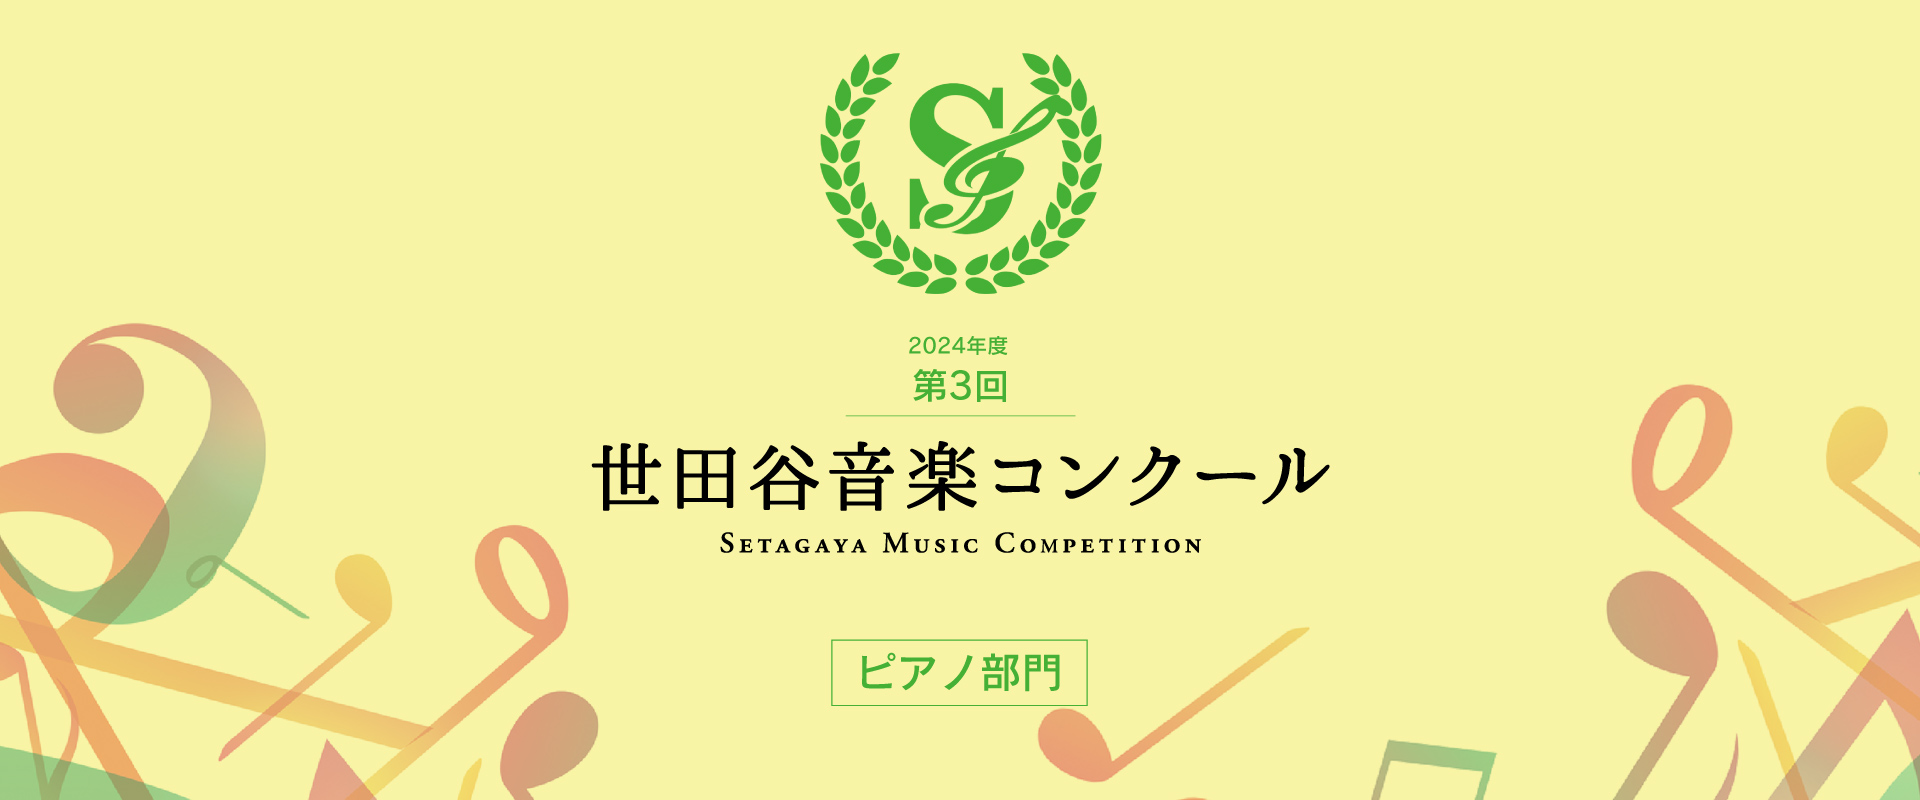 第3回 世田谷音楽コンクール（ピアノ部門） – Setagaya Music Competition